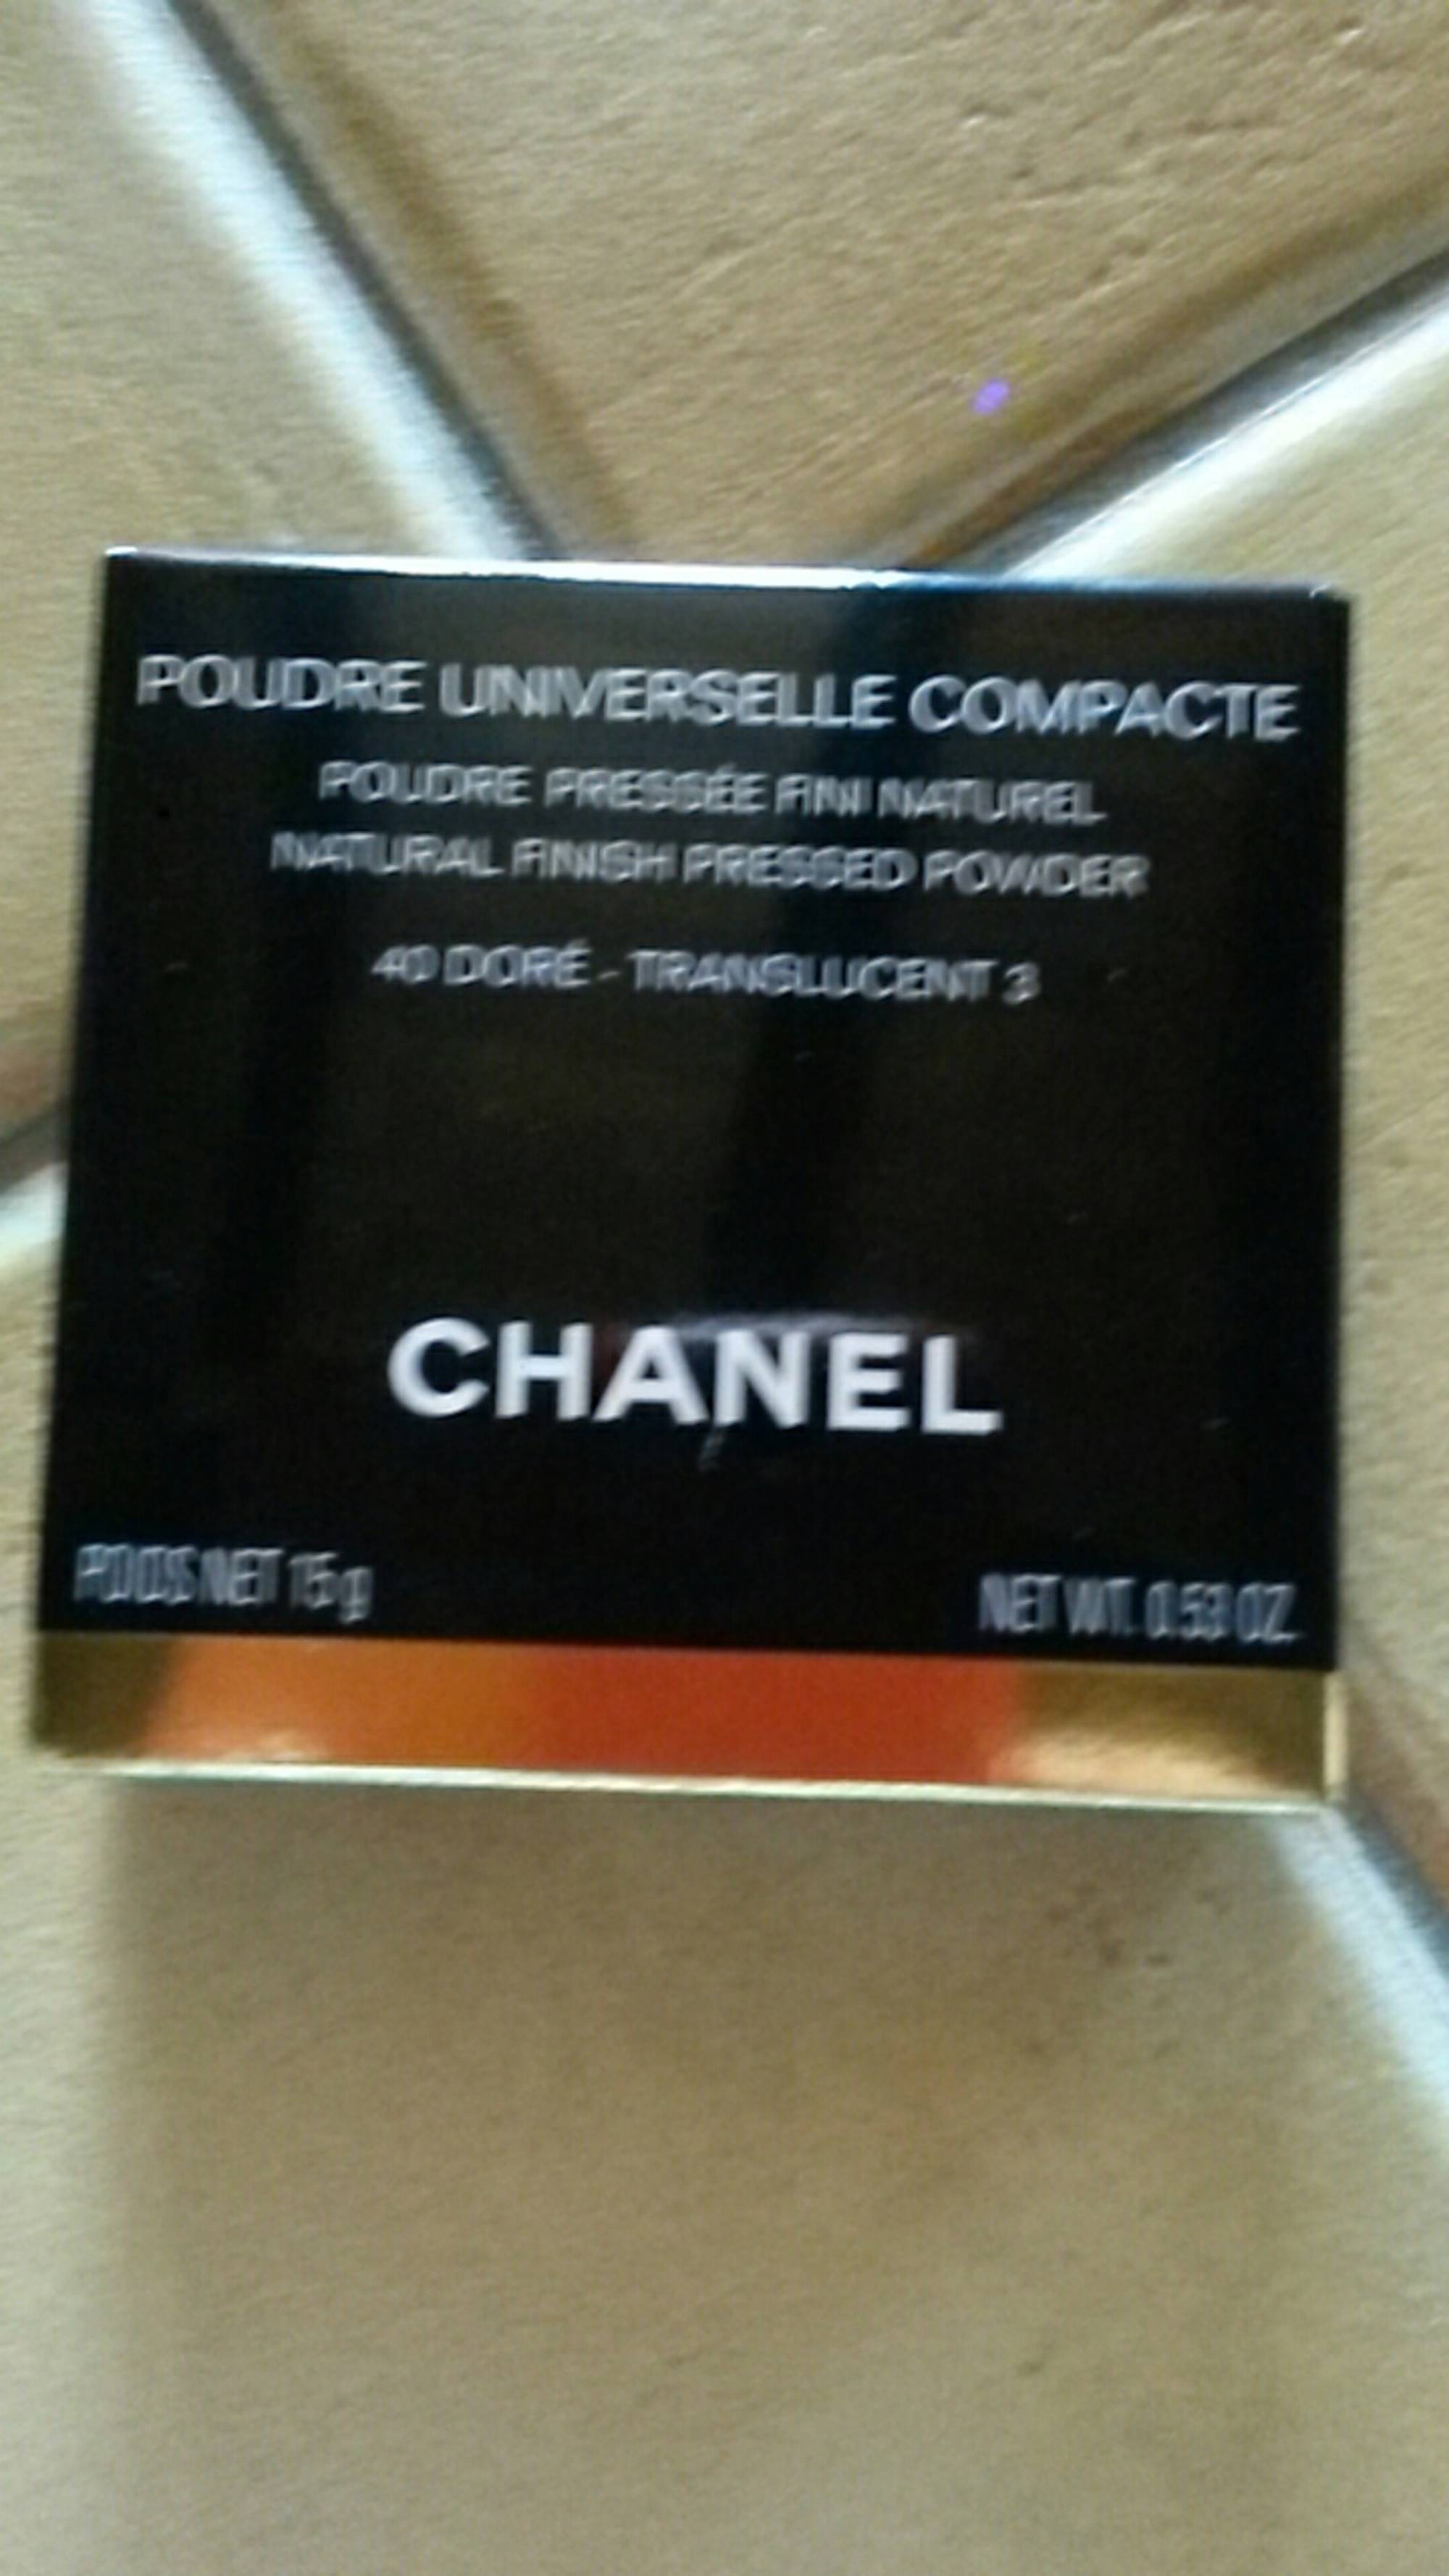 CHANEL - Poudre universelle compacte 40 doré translucent 3